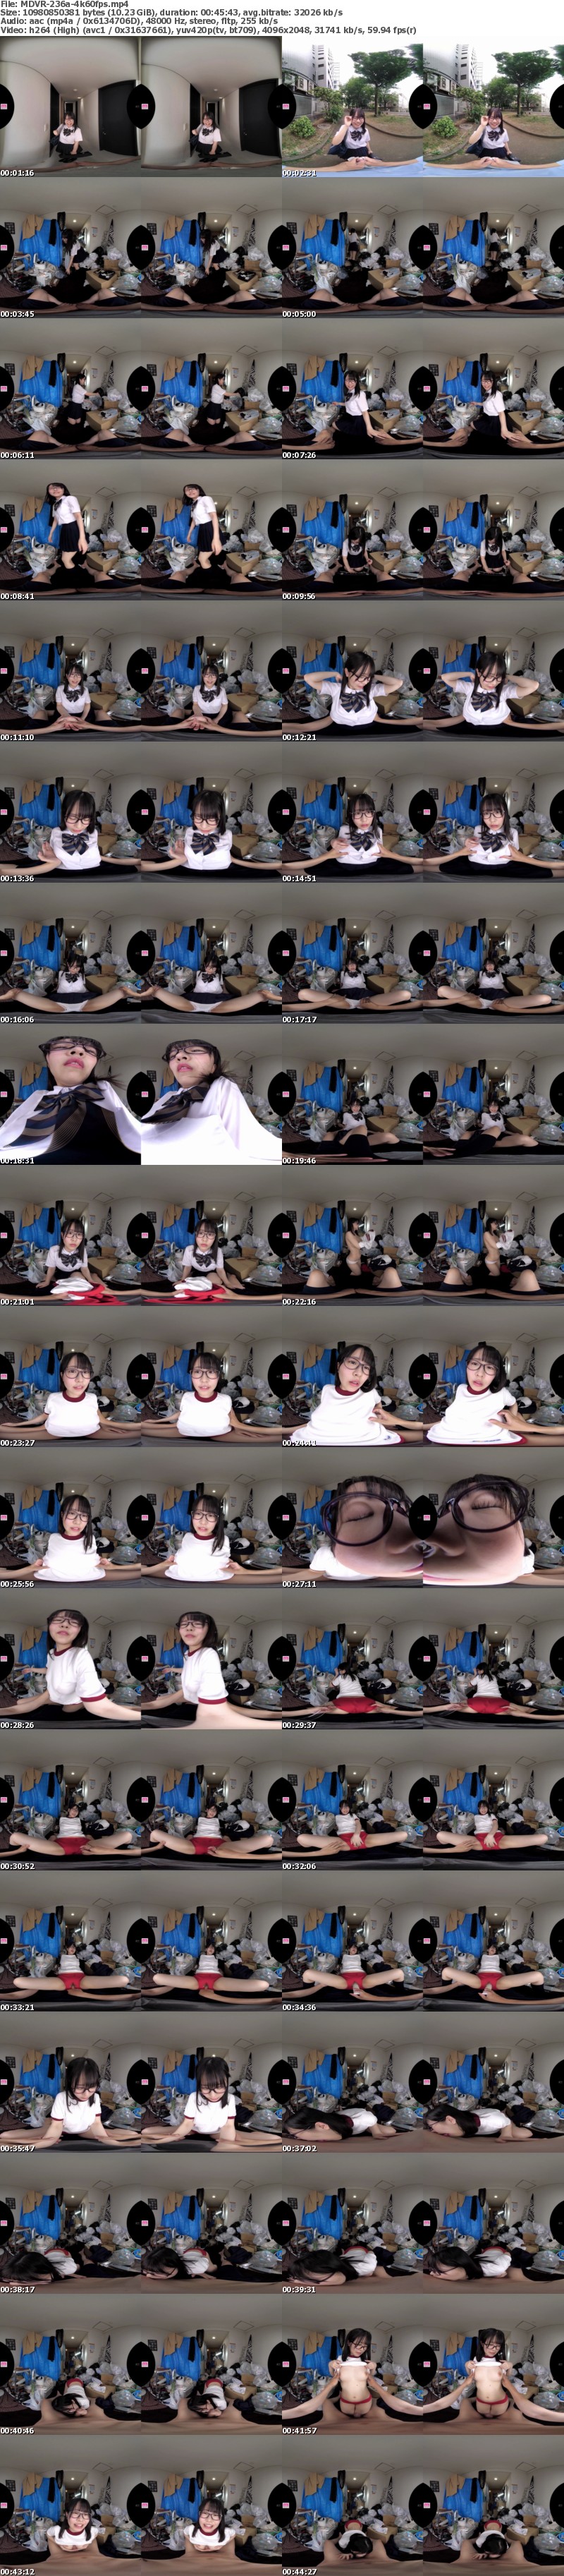 [VR] MDVR-236 【VR】ゴミ部屋おじさんと制服少女VR 音楽学校に通うメガネJ○がボクの部屋にやってきたー。